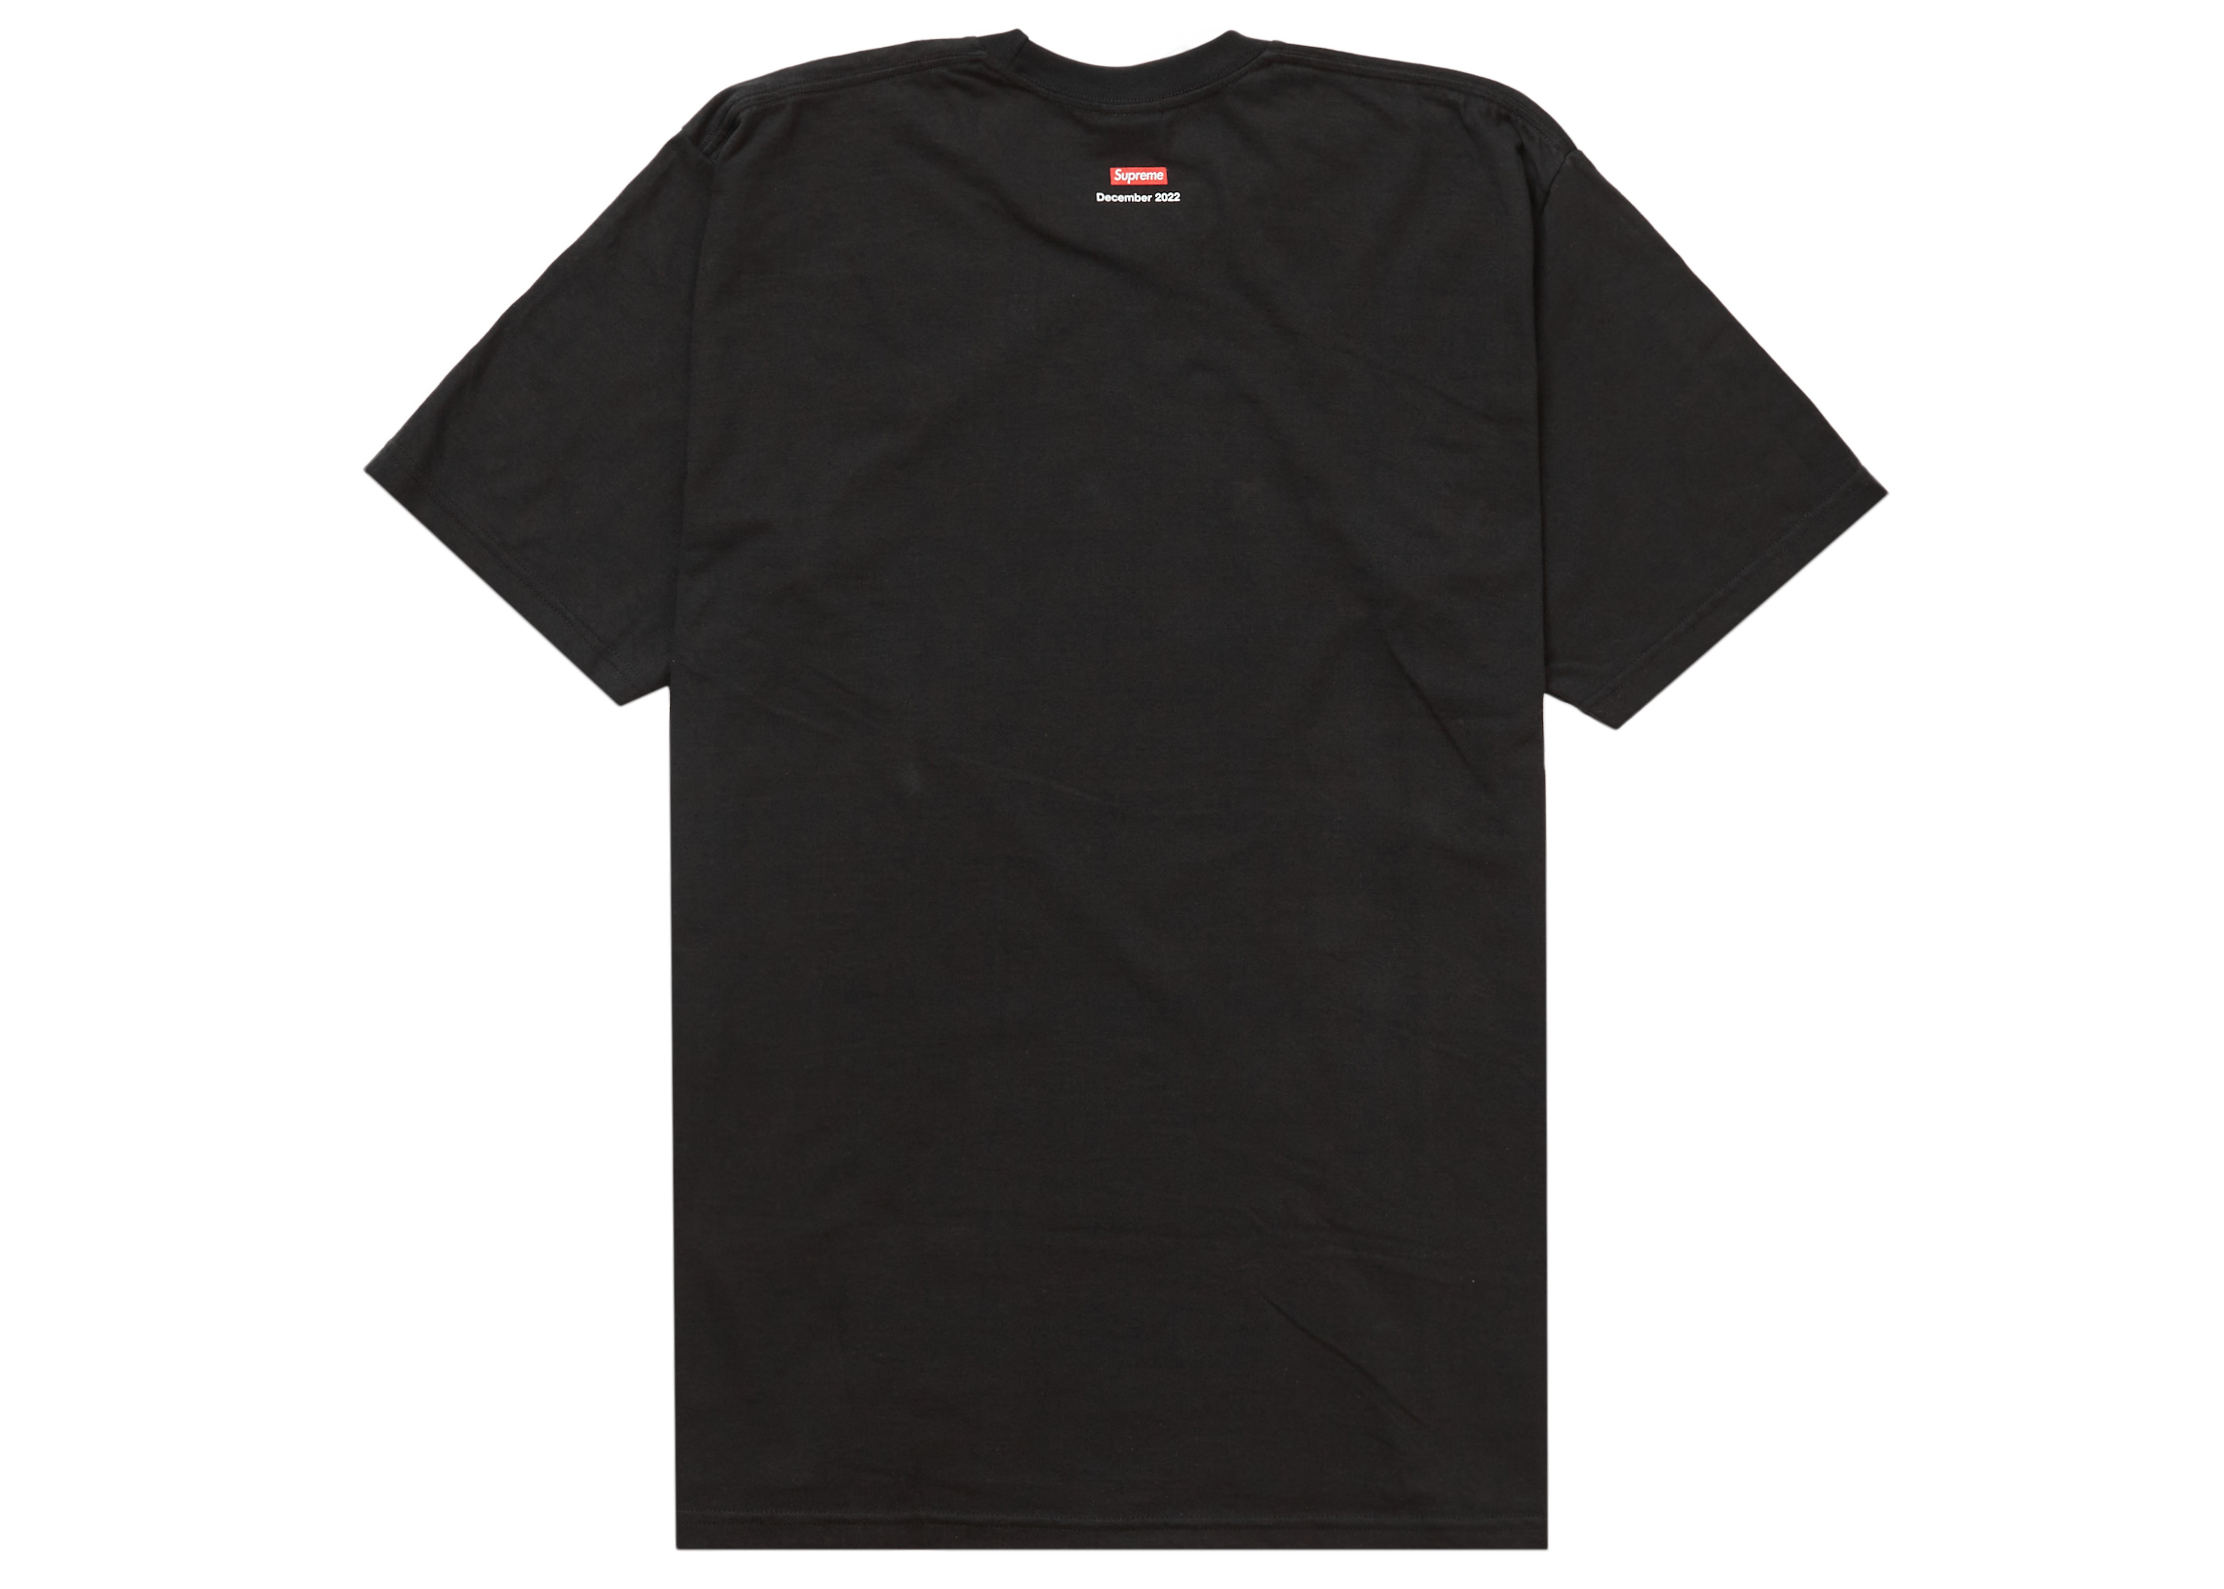 Tシャツ/カットソー(半袖/袖なし)supreme smoke tee black L 黒 Large 